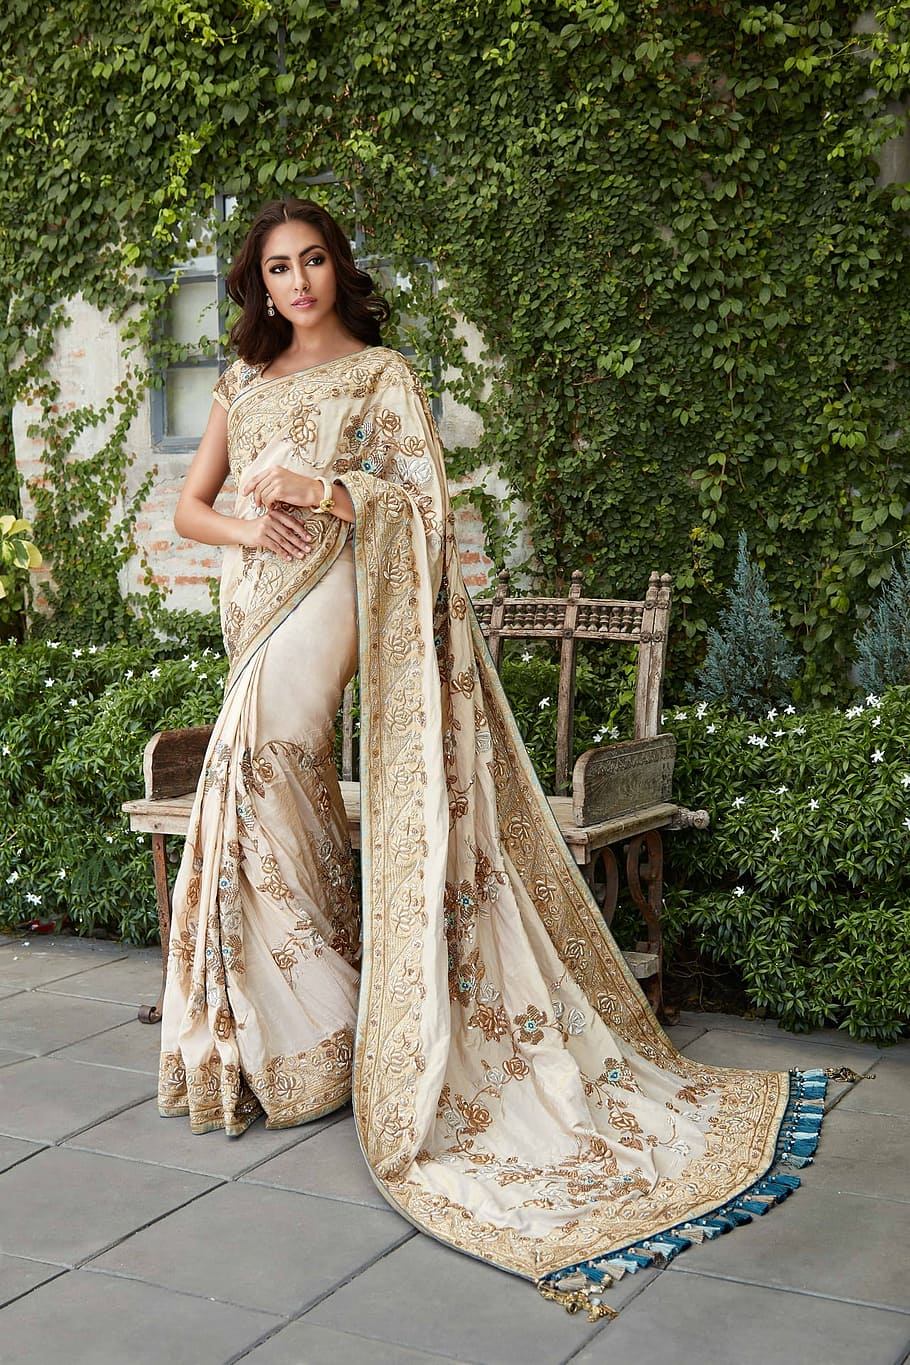 mulher, marrom, floral, sari, tradicional, vestido, comprar sarees on-line na Índia, comprar sarees on-line, sarra de banarasi on-line na índia, sarees para festas